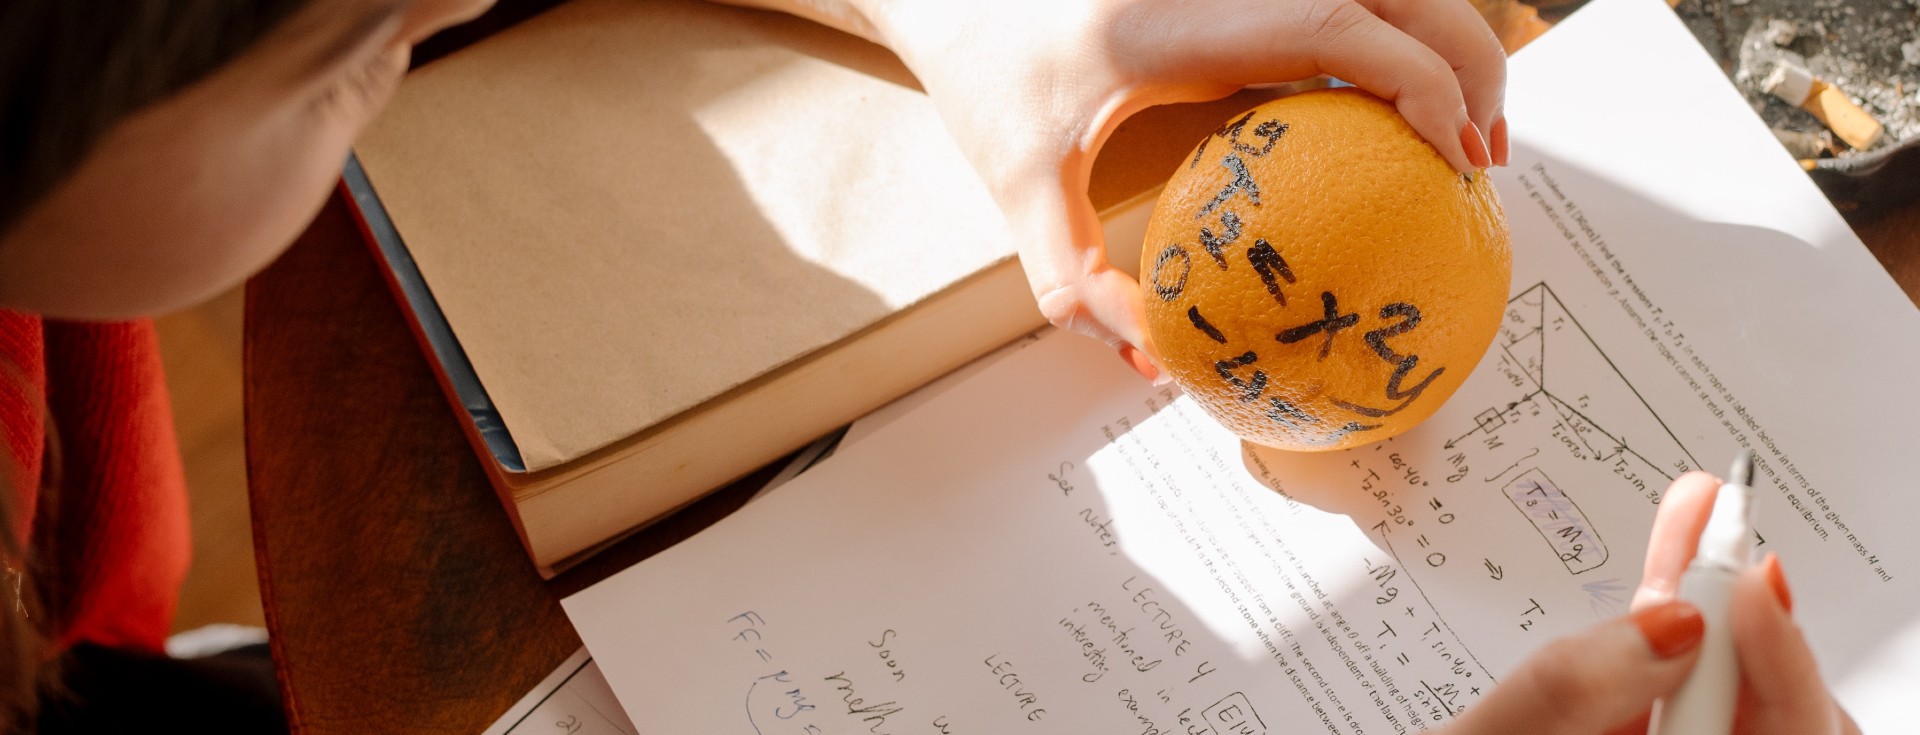 Niño realizando ecuaciones matemáticas con una naranja y un cuaderno